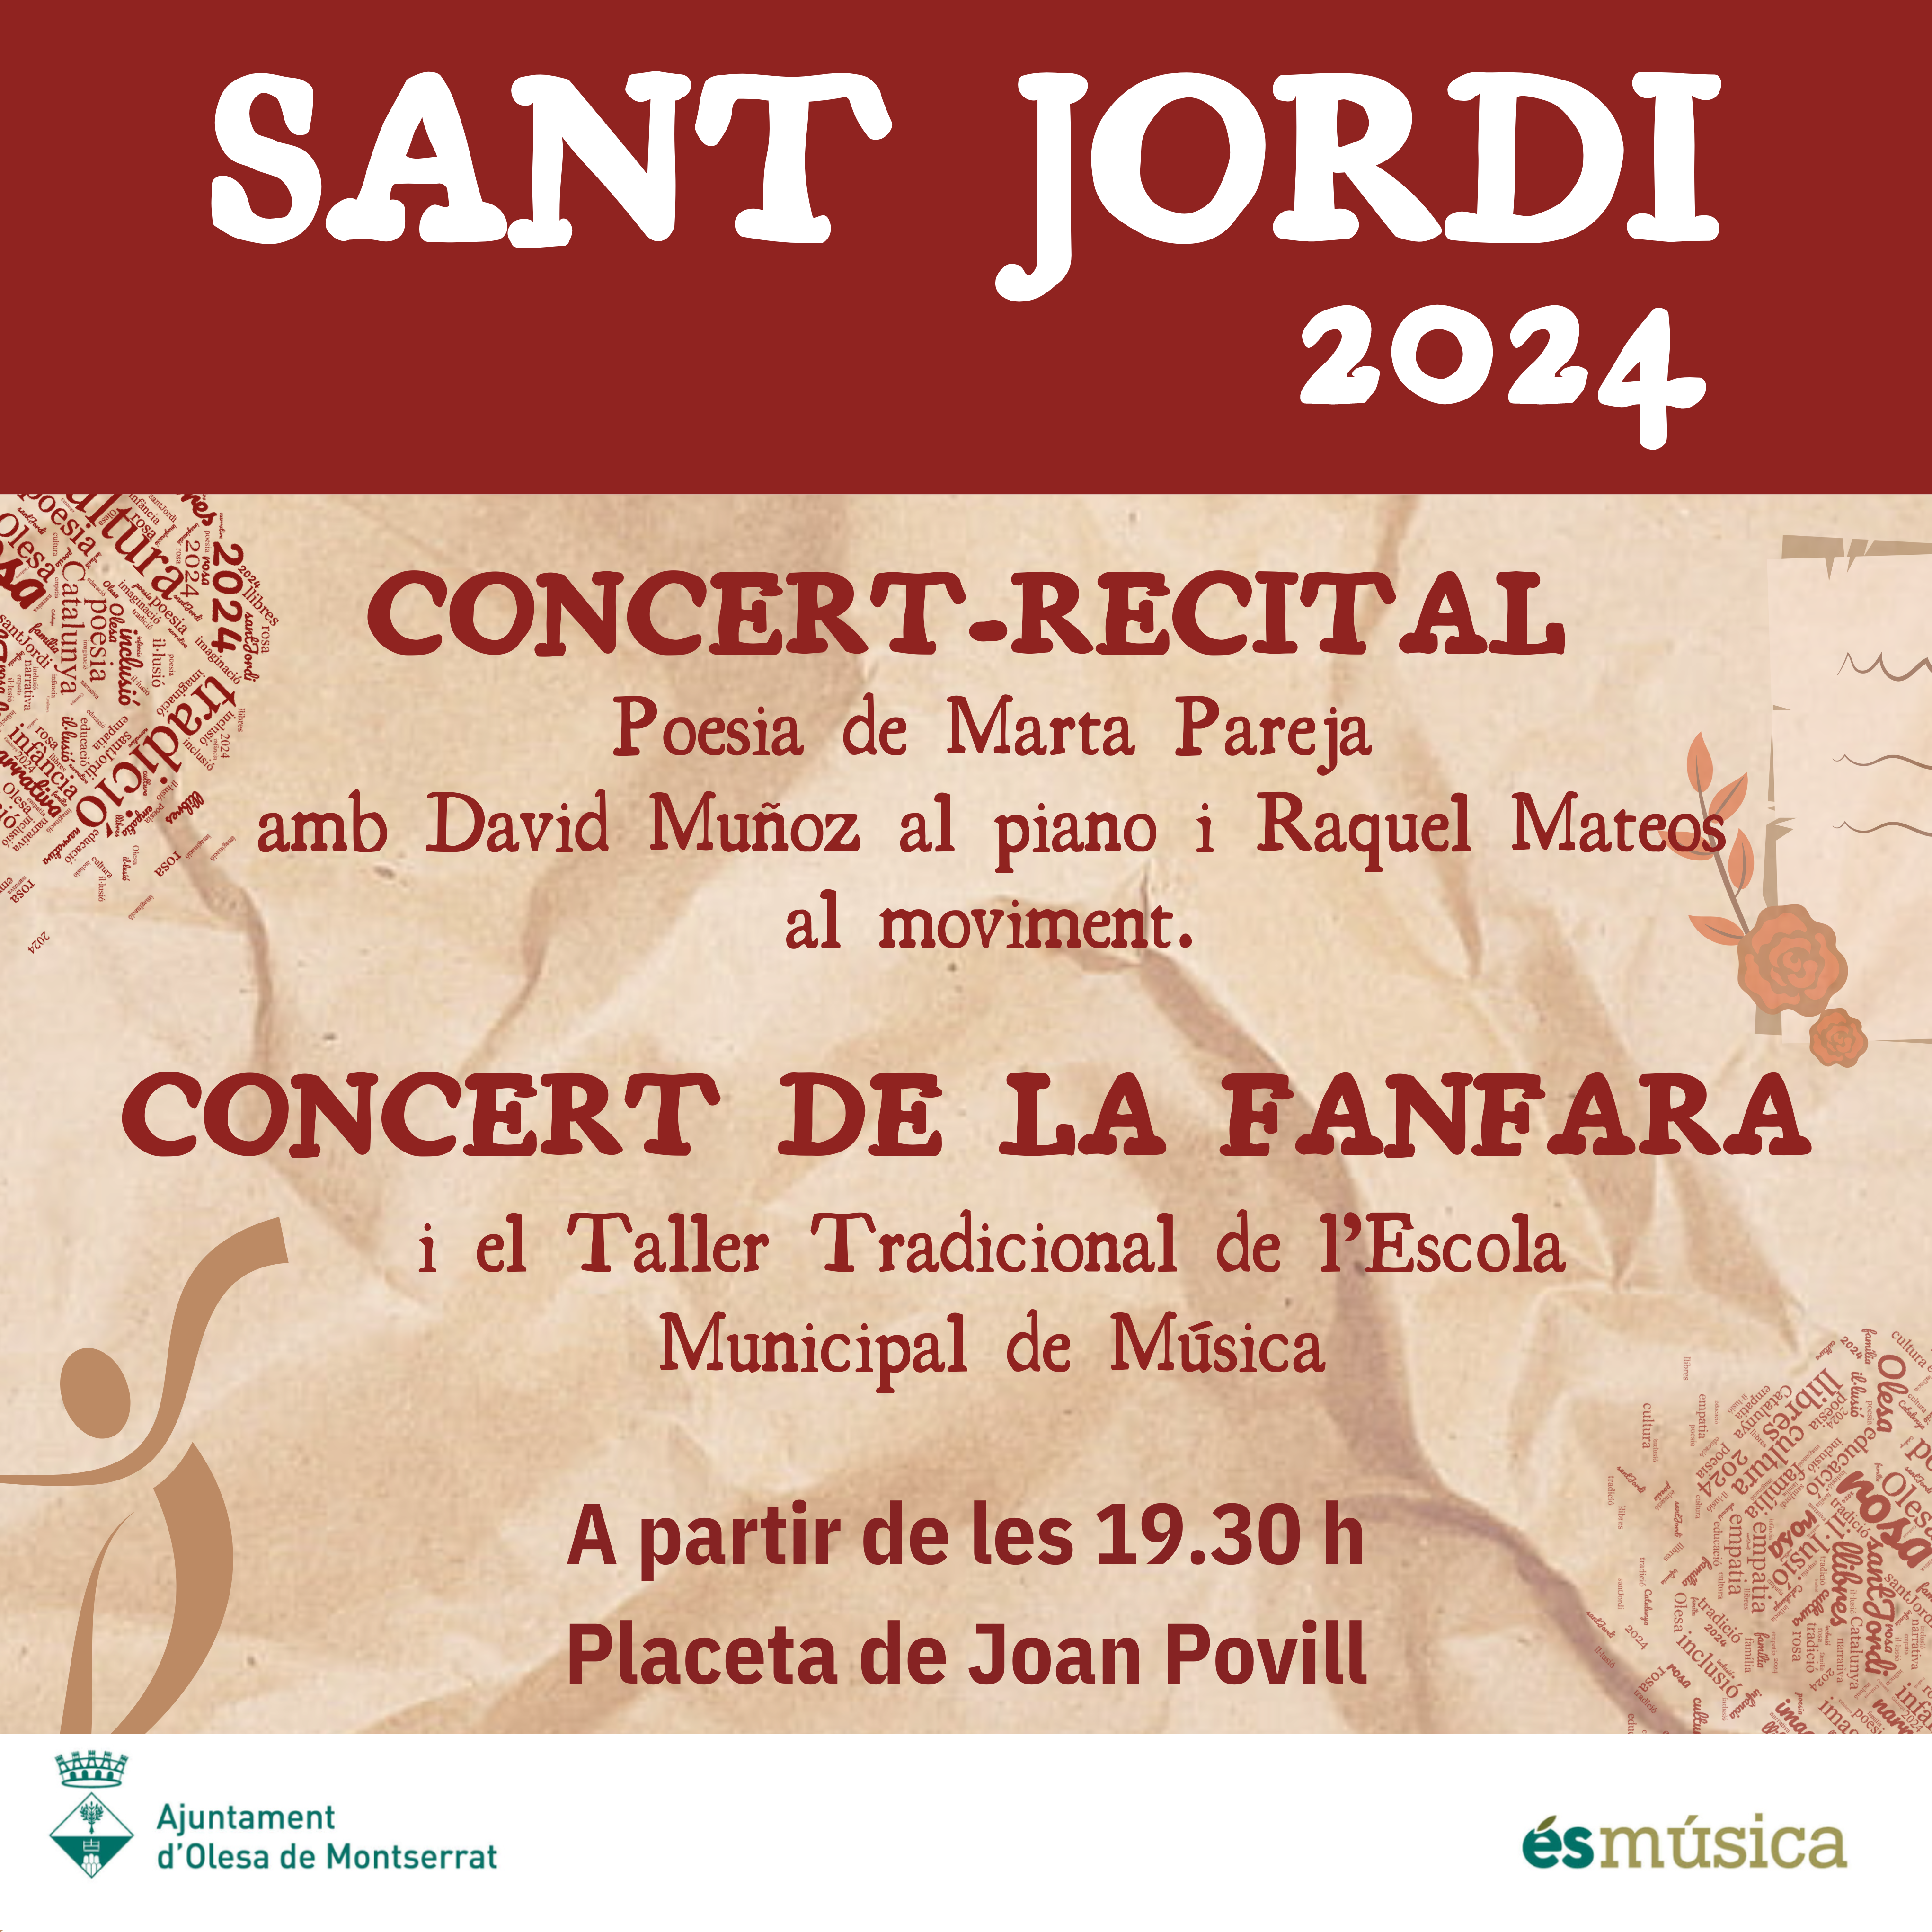 Concert-Recital i Fanfara per Sant Jordi 2024